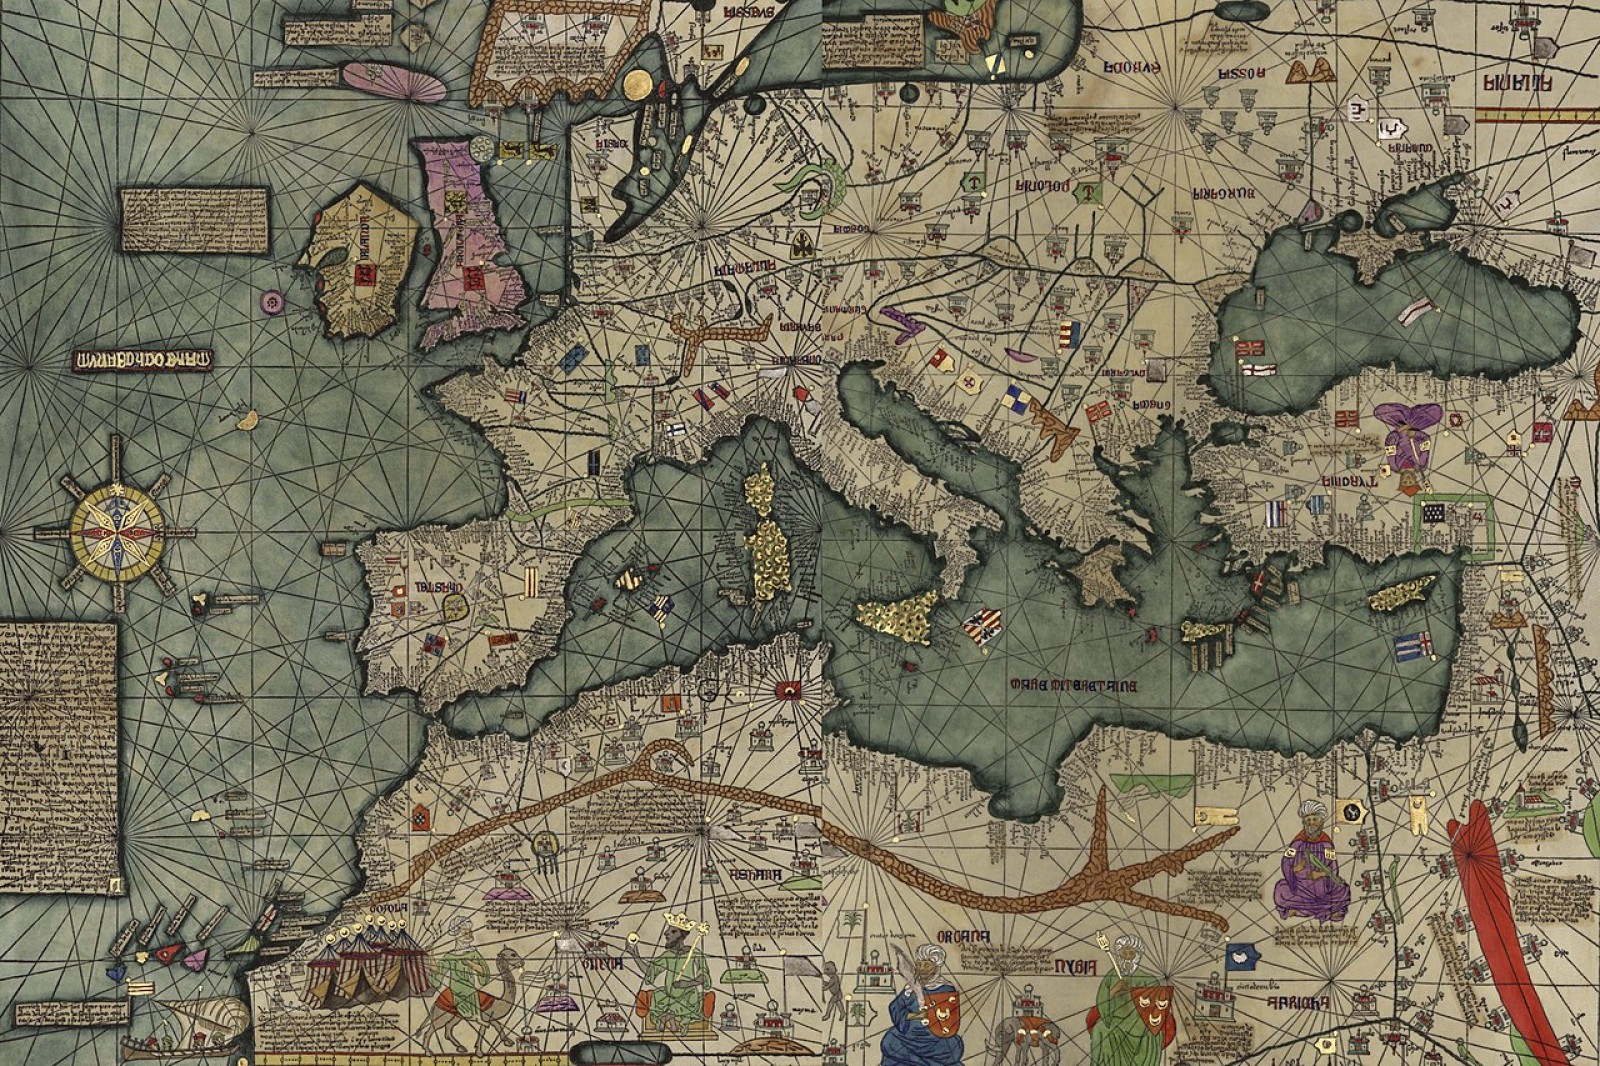 Carta portolana del cartògraf Abraham Cresques, coneguda pel nom d’Atles Català. Carta portolana nàutico-geogràfica confeccionada el 1375